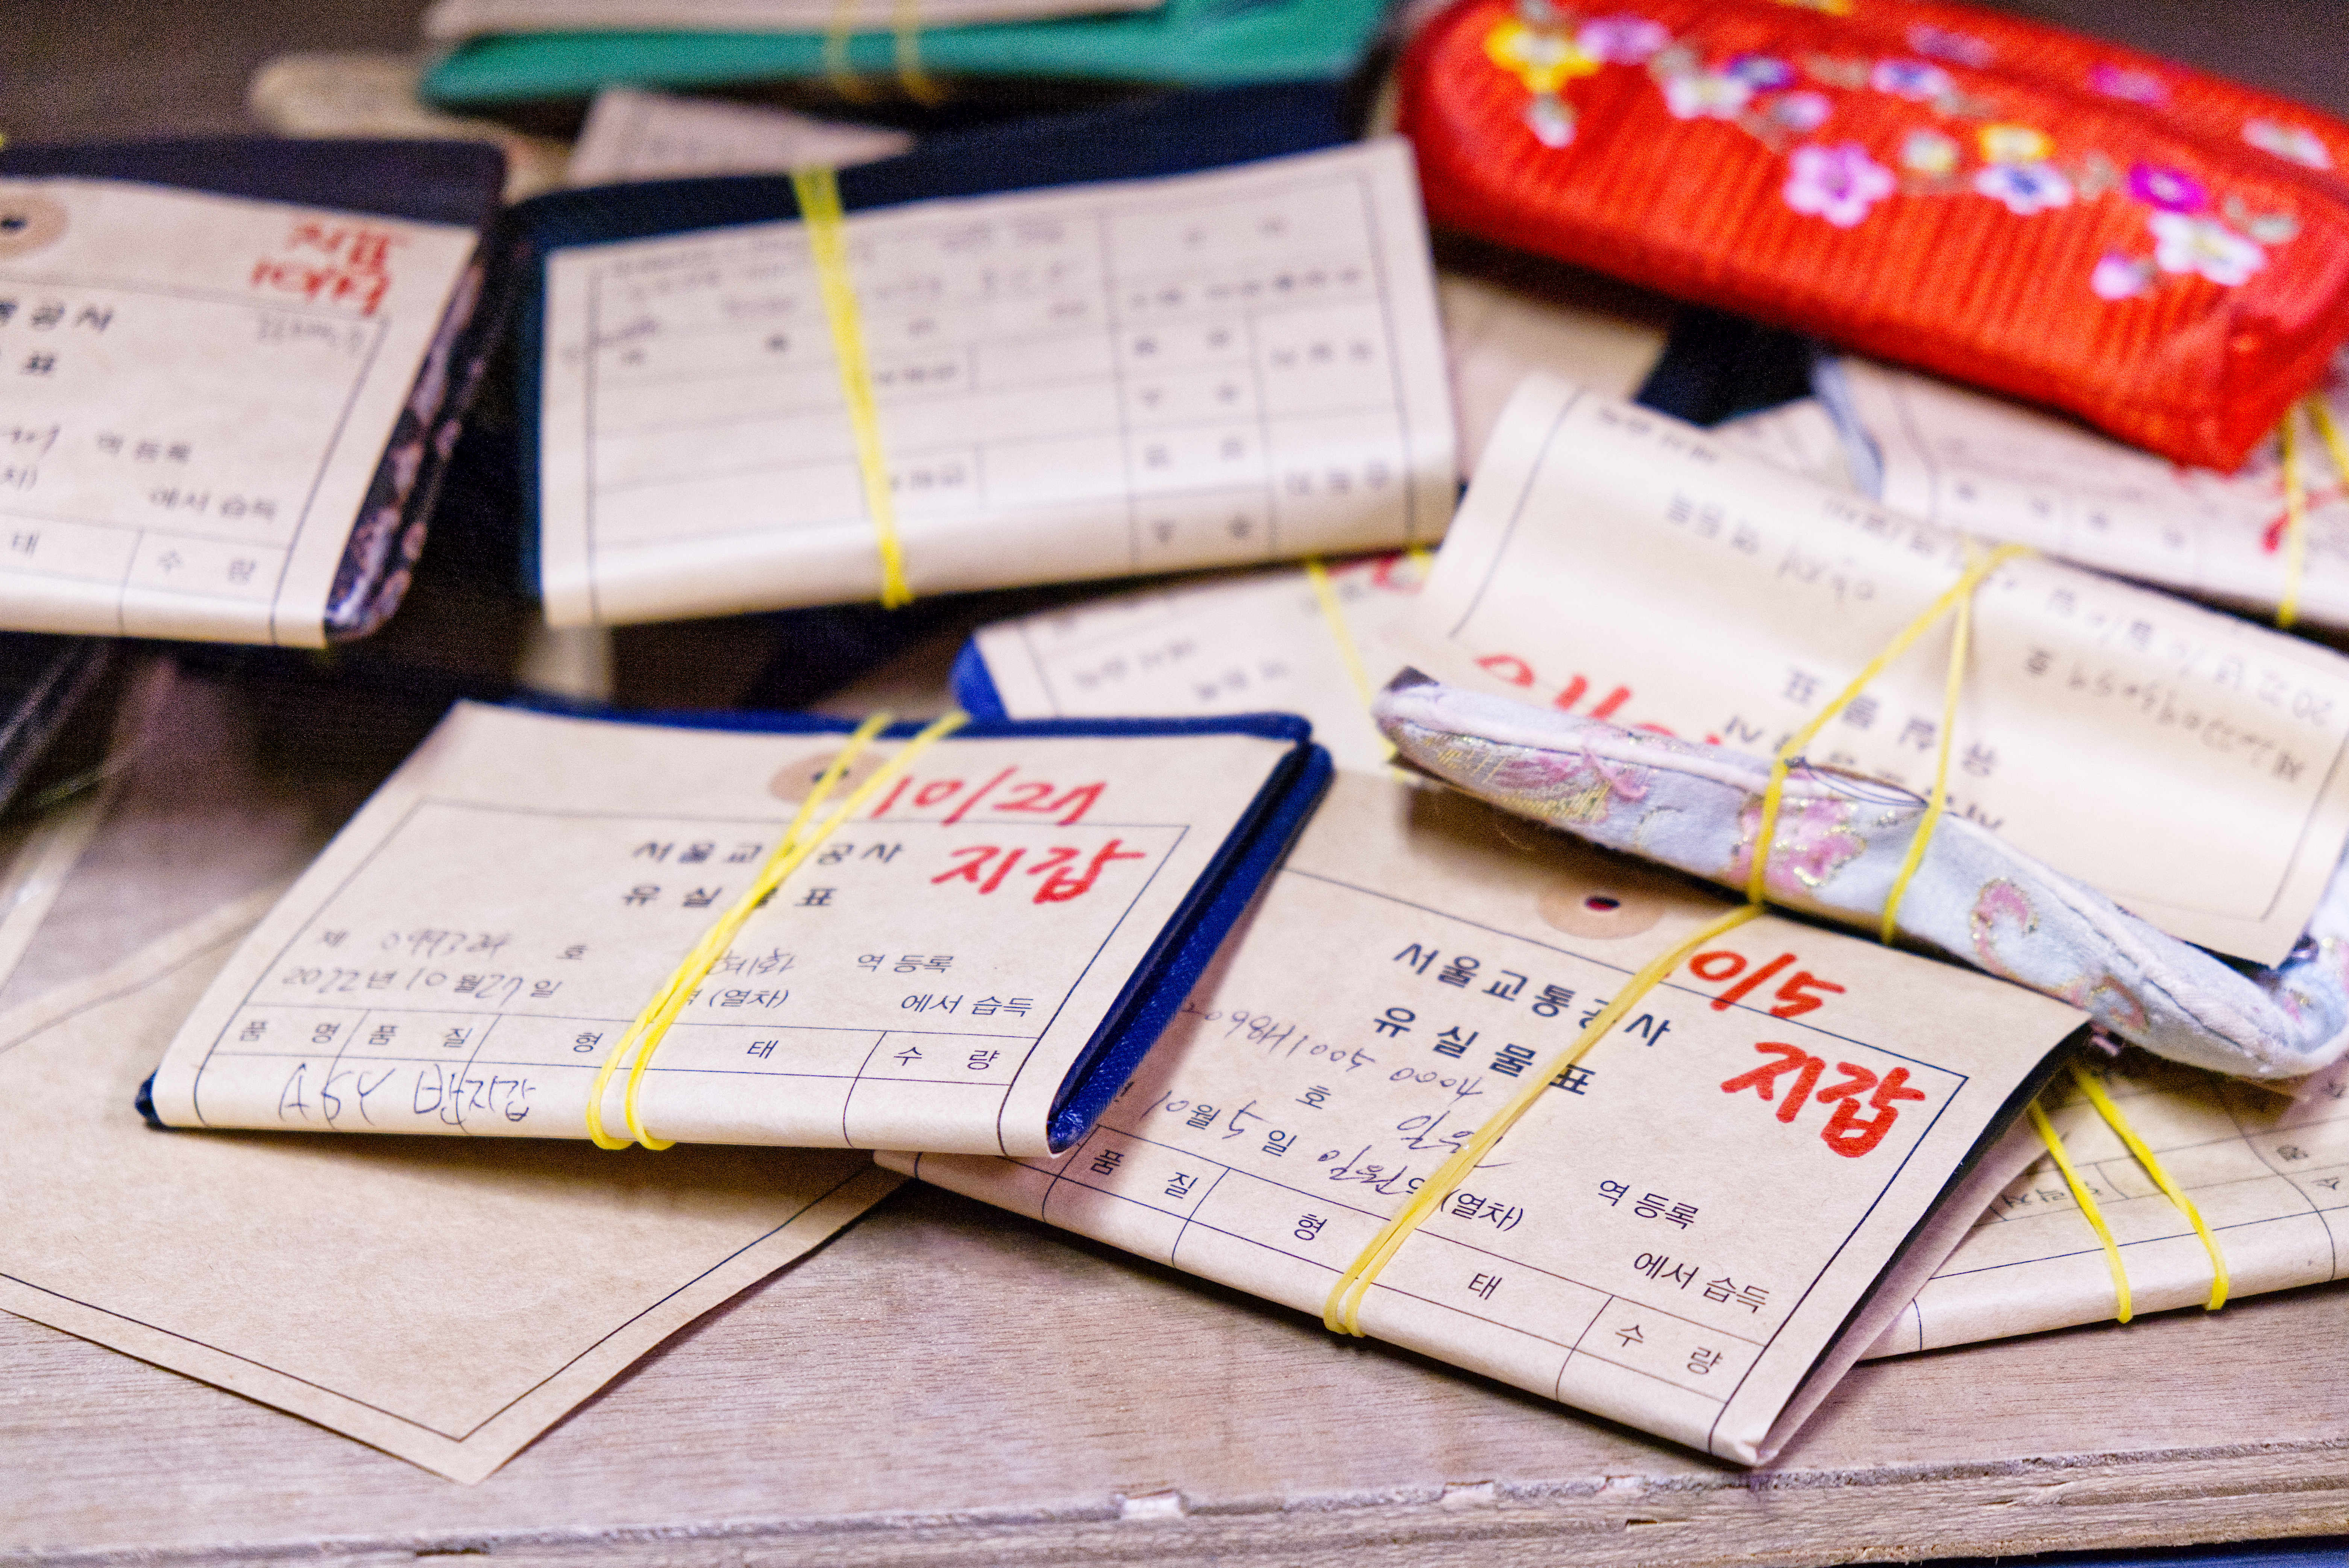 서울교통공사 지하철 유실물센터에 승객들이 분실한 지갑들이 쌓여있다. 서울시 제공